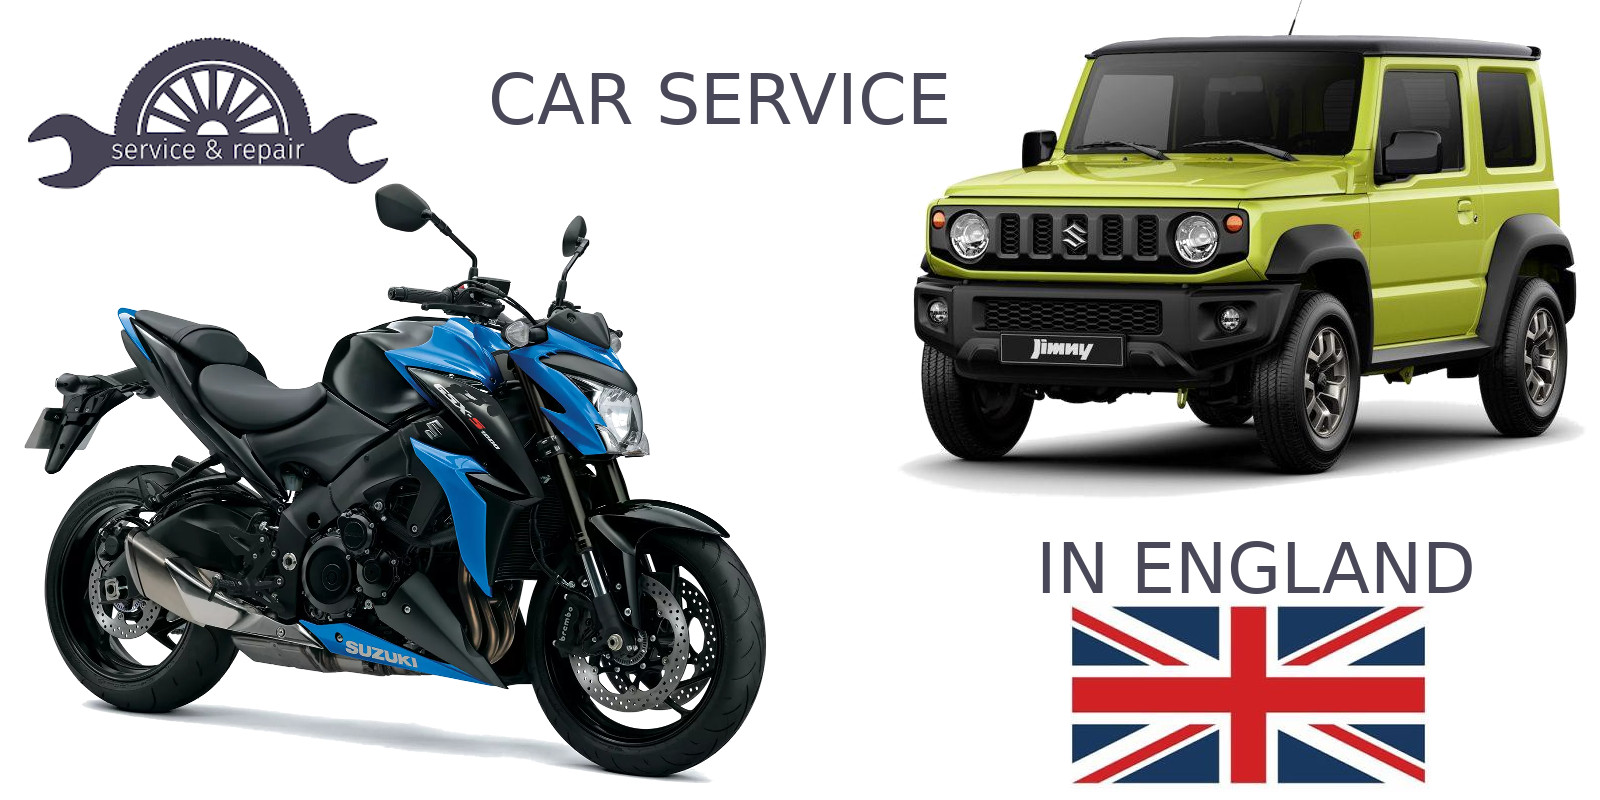 Suzuki car service in UK